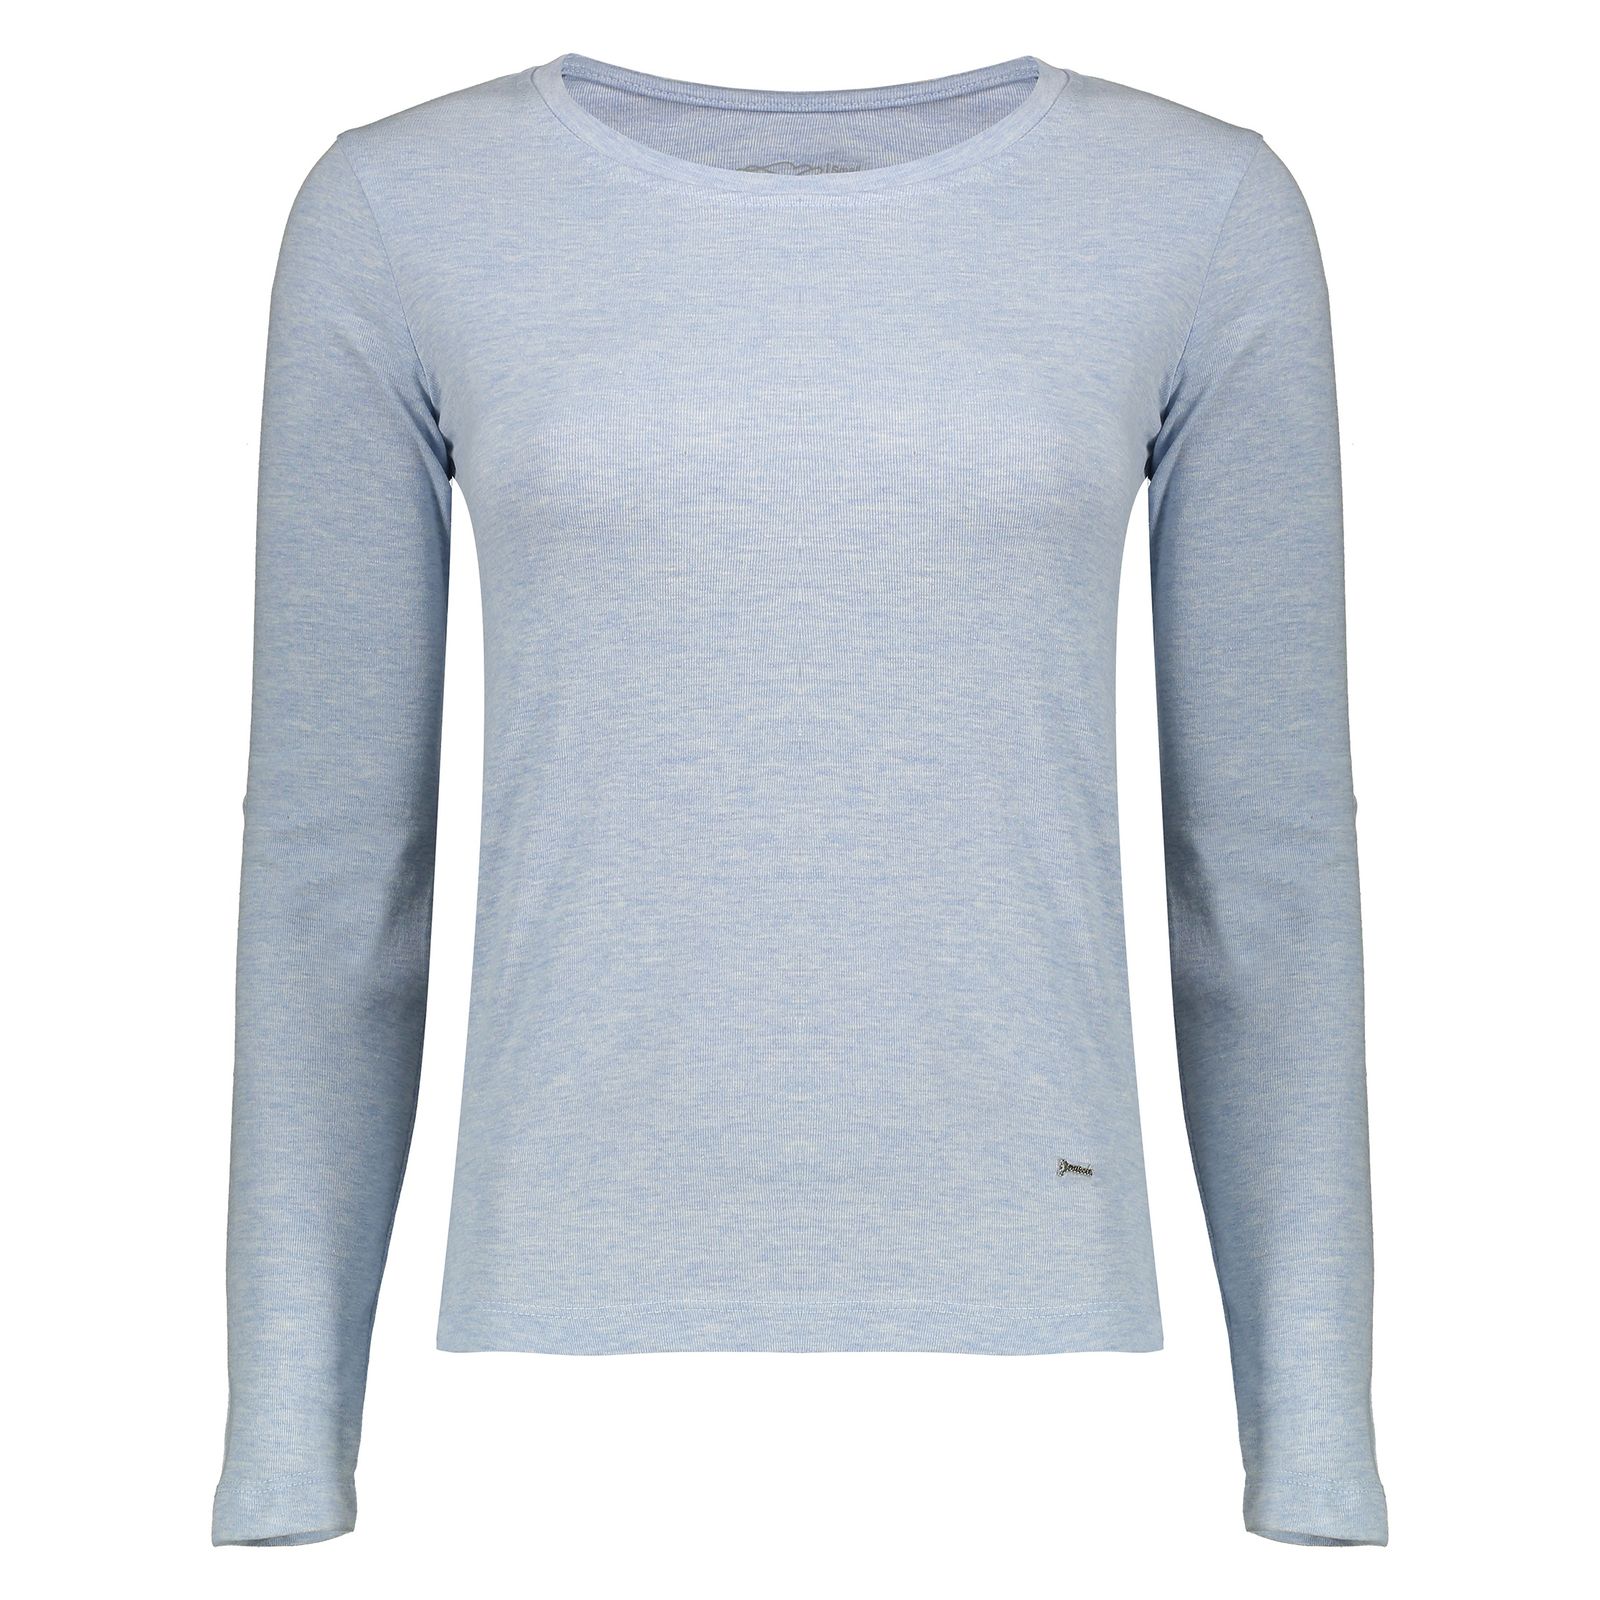 تی شرت زنانه گارودی مدل 1003107001-52 - آبی - 1